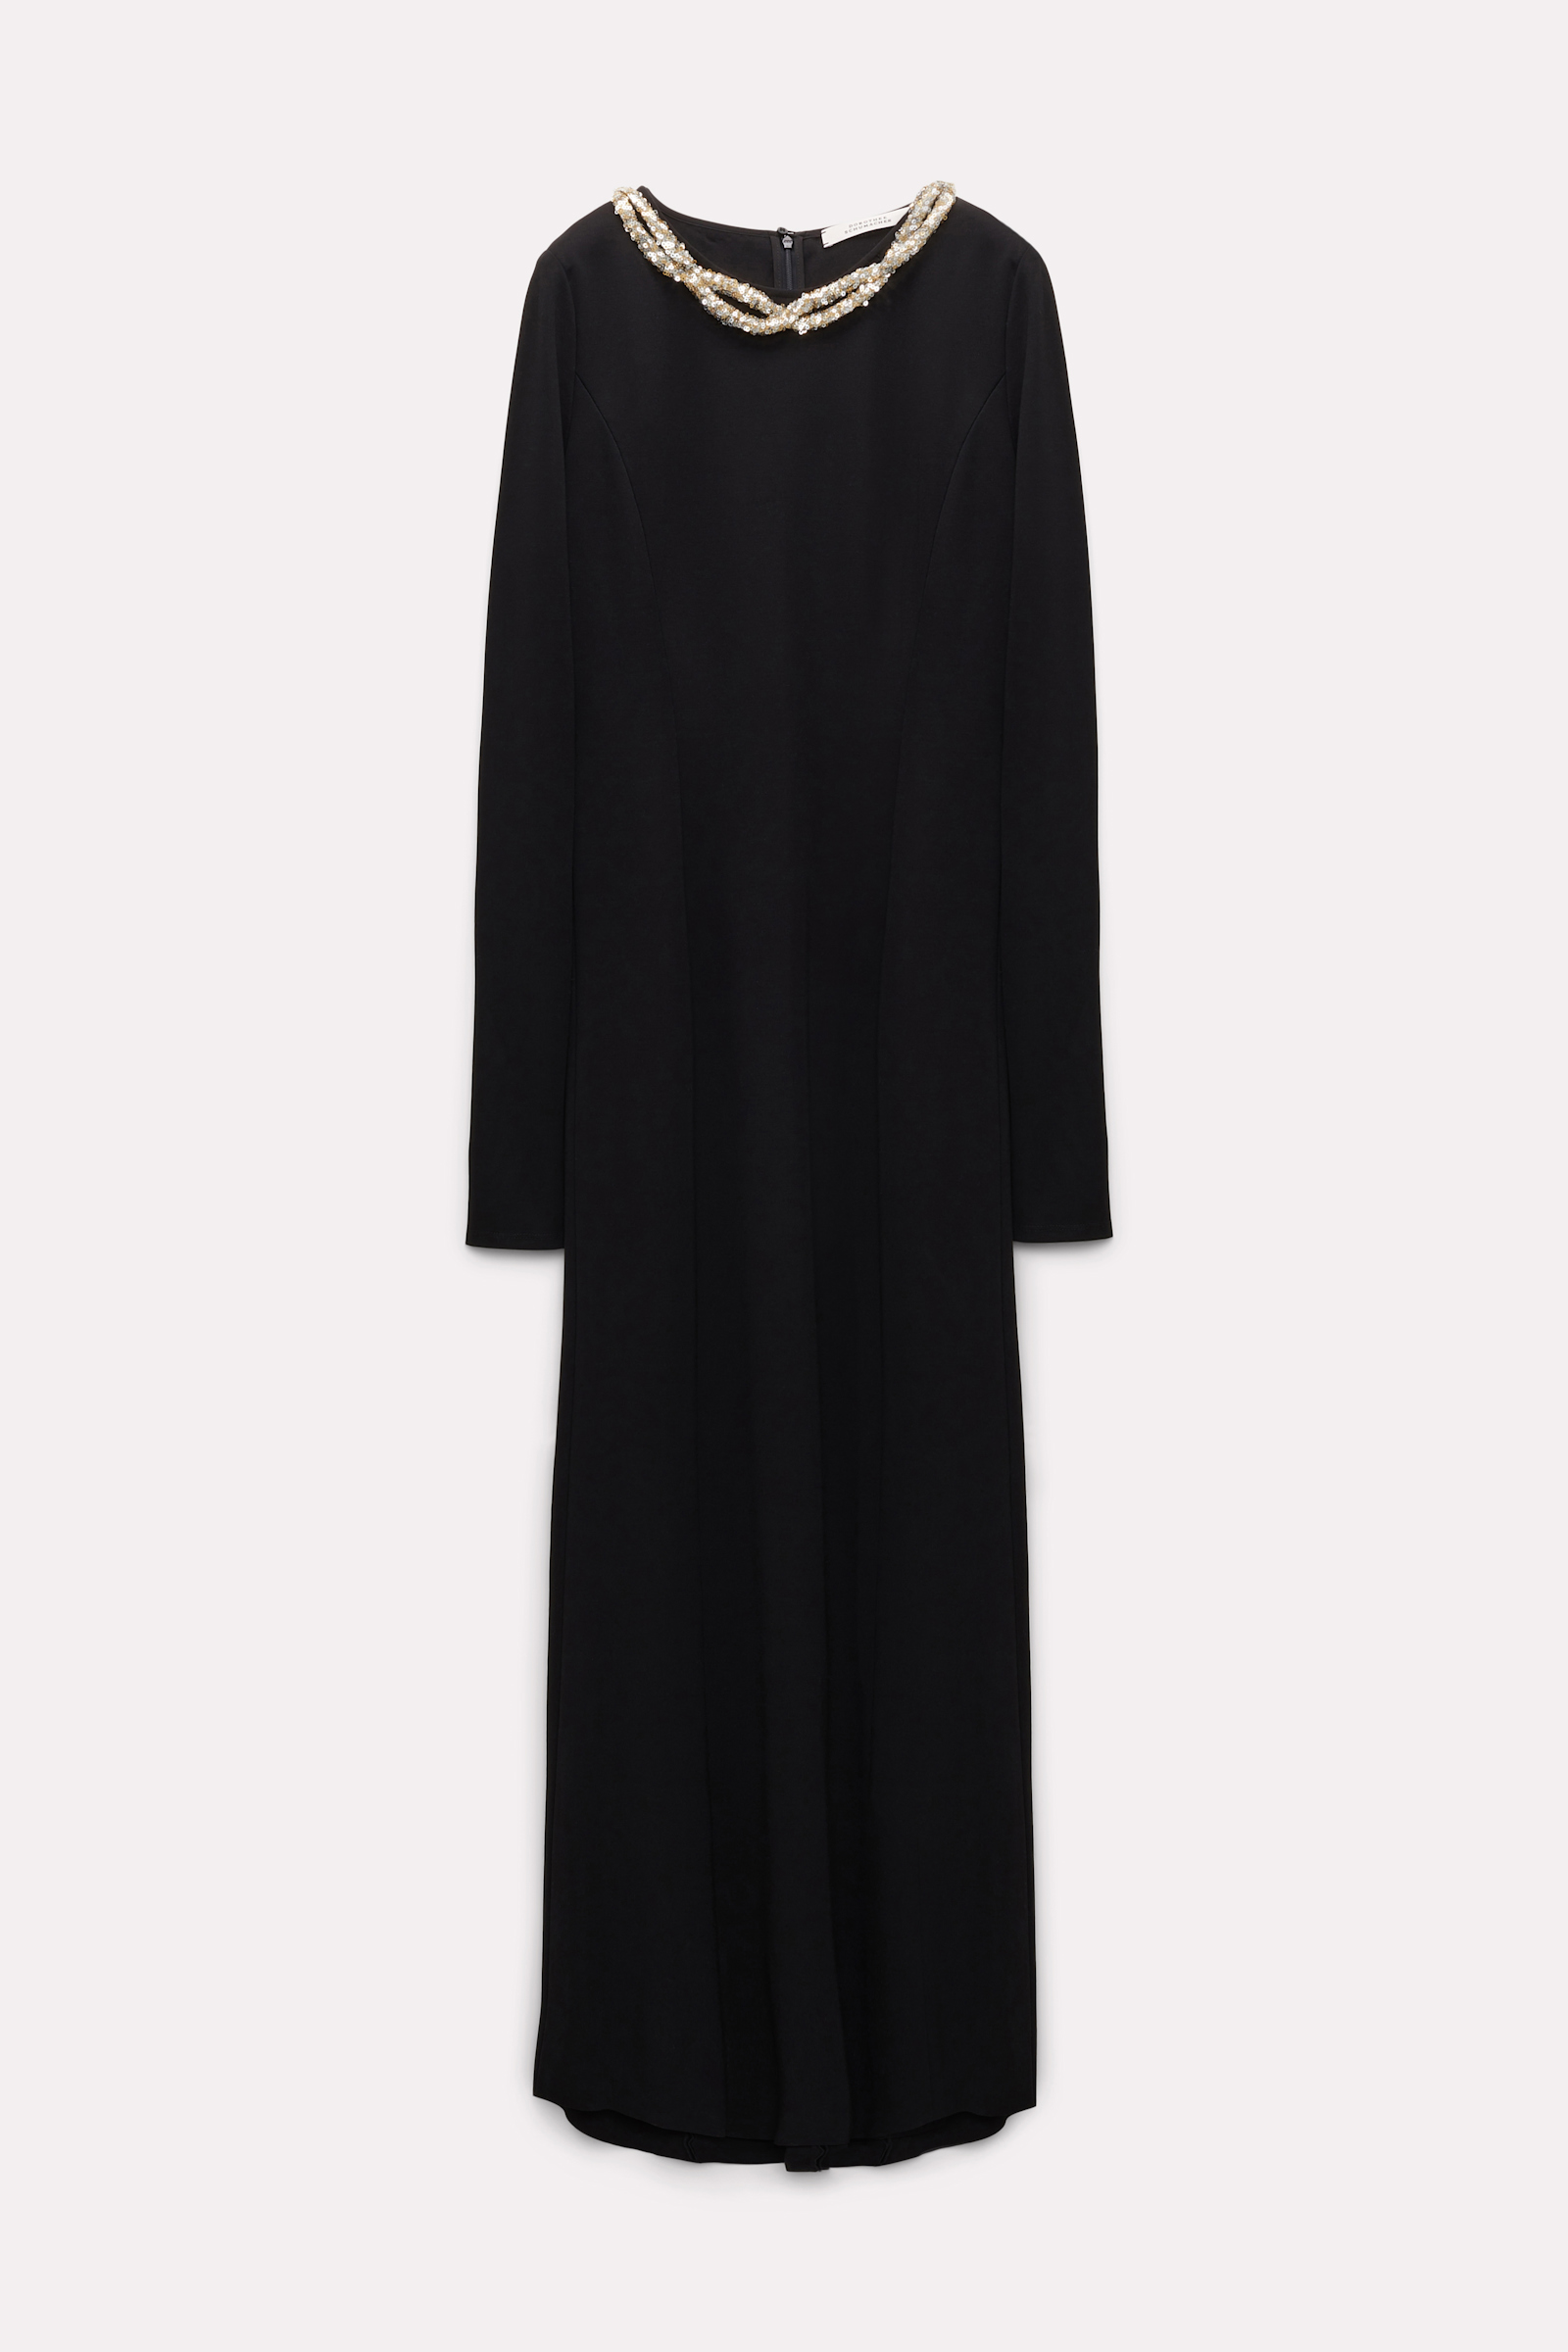 Dorothee Schumacher Langes Kleid mit Embroidery pure black